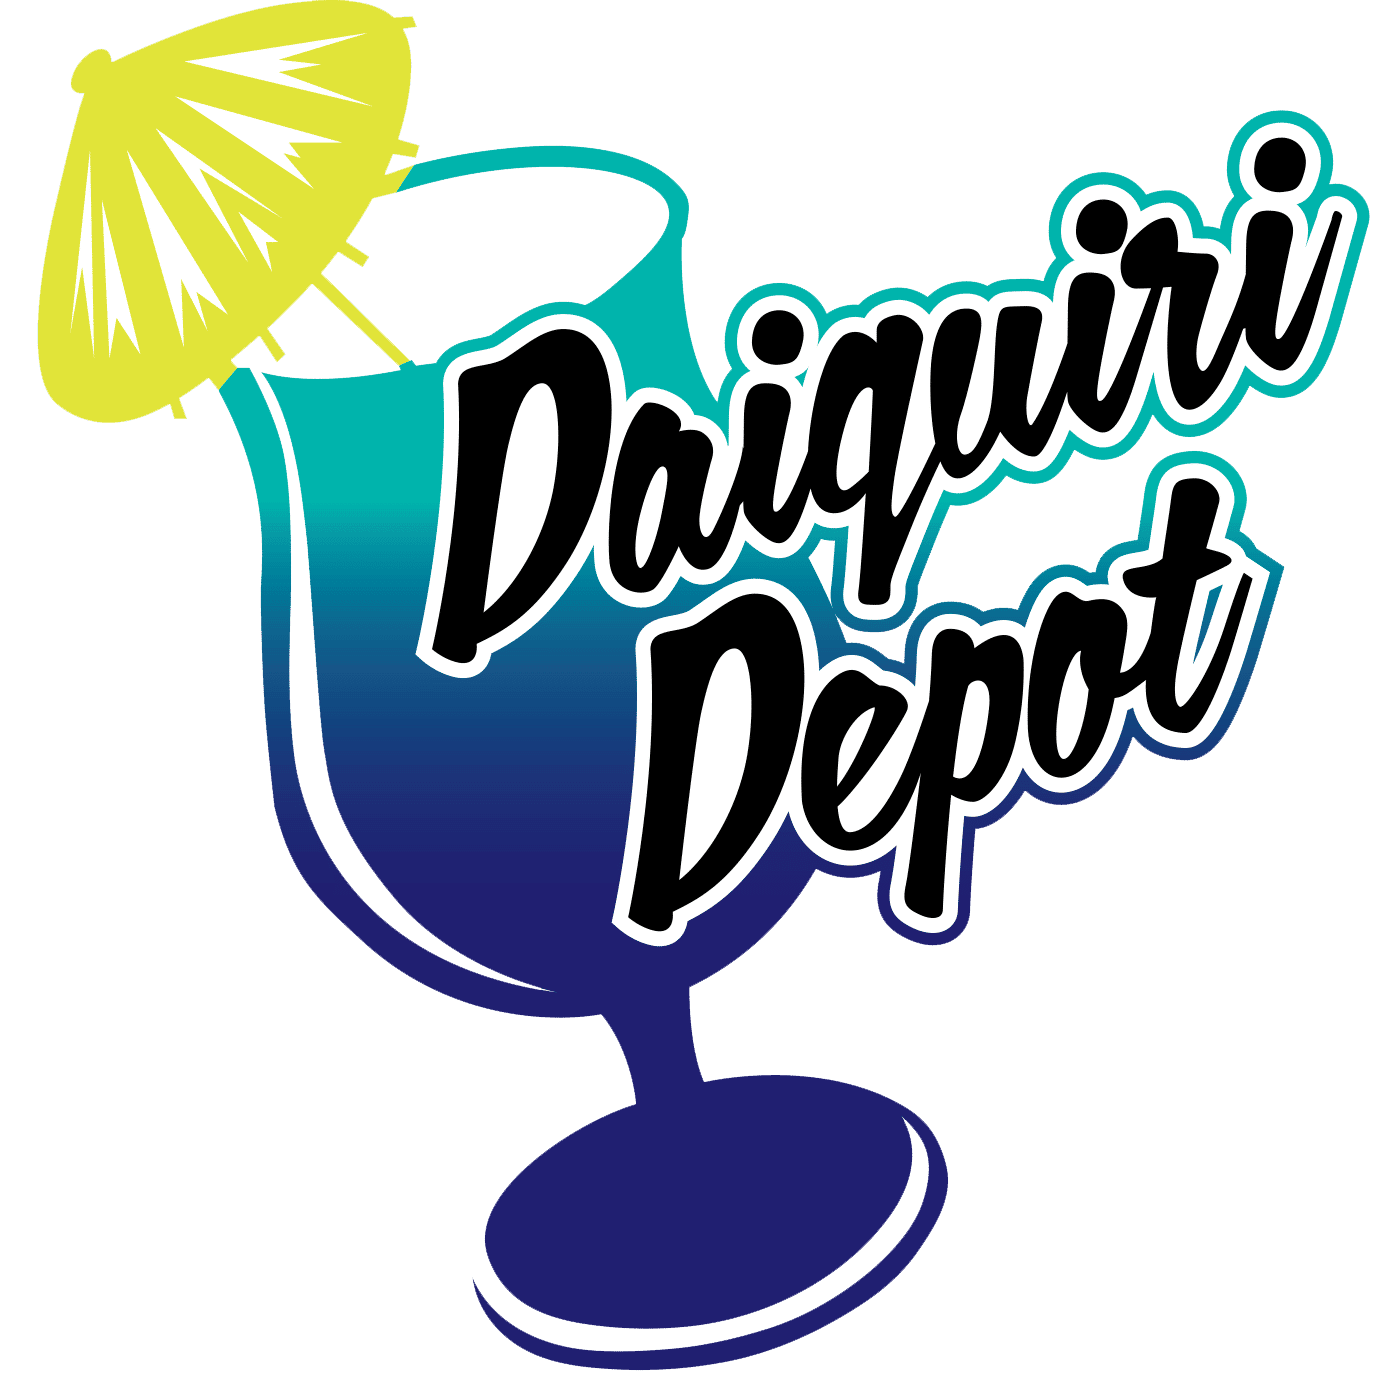 daiquiri depot arlington tx